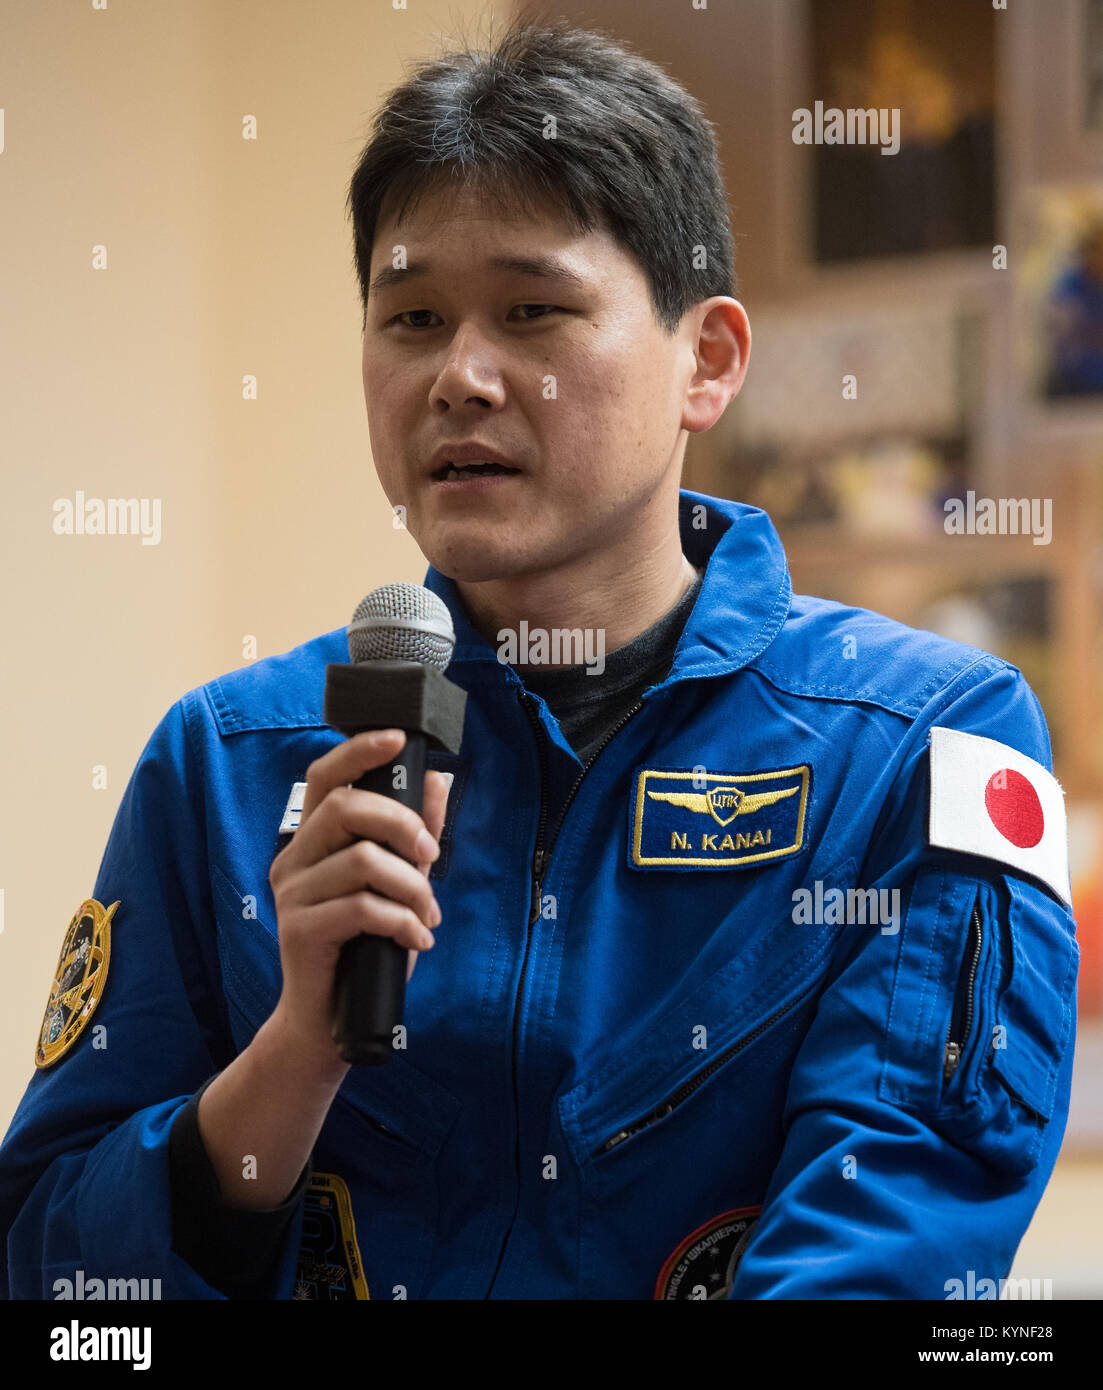 L'ingénieur de vol de l'expédition 54 Norishige Kanai de l'Agence japonaise d'exploration aérospatiale (JAXA) répond à une question au cours d'une conférence de presse, samedi, 16 décembre 2017 à l'hôtel cosmonaute à Baïkonour, au Kazakhstan. Expedition 54 commandant de Soyouz Anton Shkaplerov de Roscosmos, ingénieur de vol de la NASA, Scott Tingle et ingénieur de vol Norishige Kanai de l'Agence japonaise d'exploration aérospatiale (JAXA) sont prévus pour le lancement de la Station spatiale internationale à bord du Soyouz à partir du cosmodrome de Baïkonour le 17 décembre. Crédit photo : NASA/Joel Kowsky) Banque D'Images